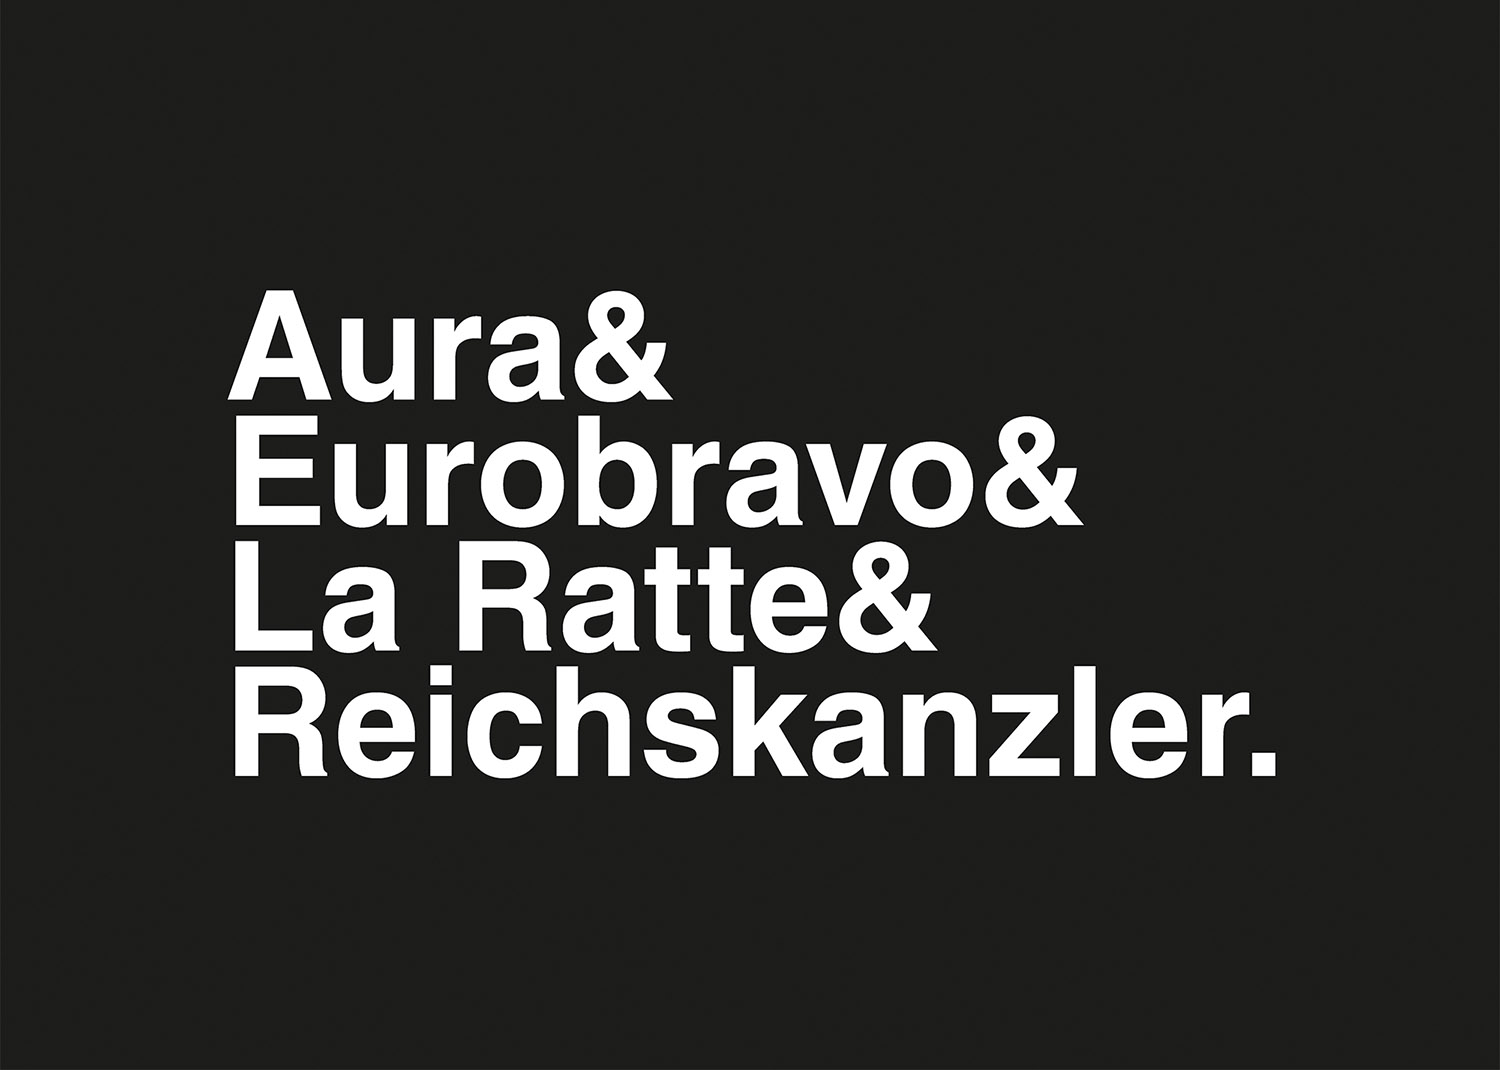 Aura & Eurobravo & La Ratte & Reichskanzler / 2  8x20cm, Serigrafie, handgedruckt, limitierte 5er-Auflage (rückseitig nummeriert und signiert), 2016